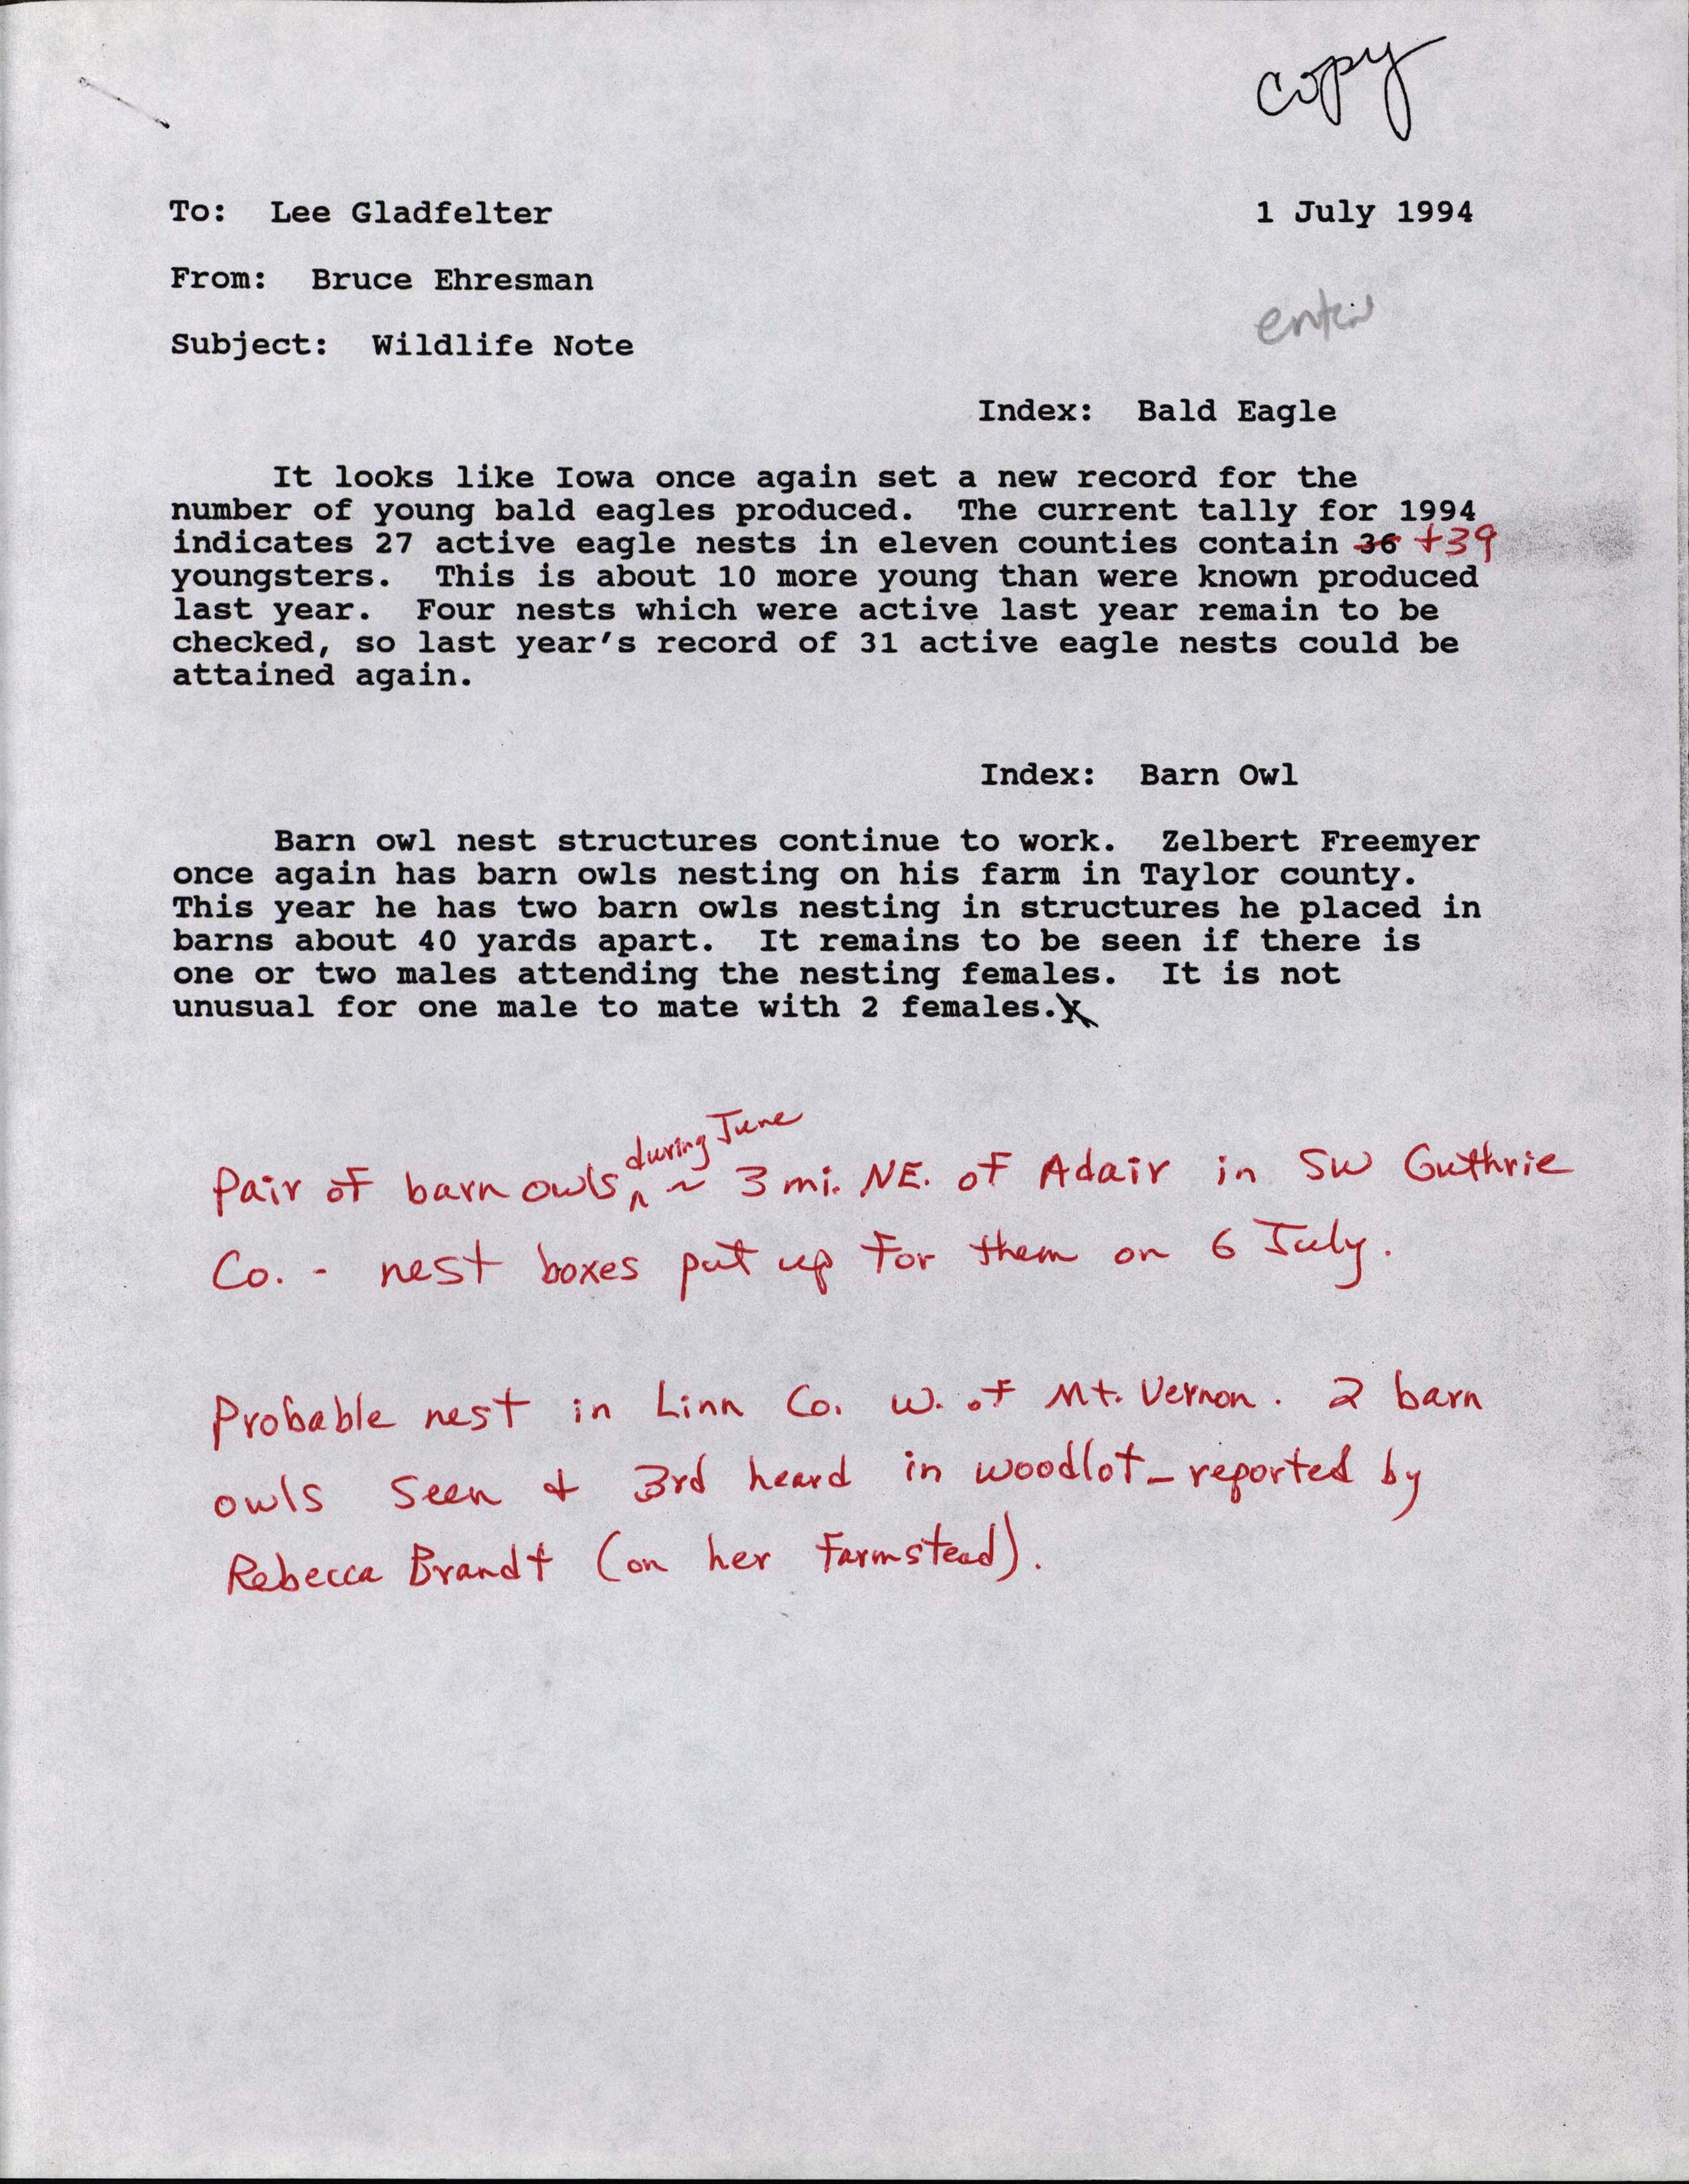 Bruce Ehresman letter to Lee Gladfelter regarding wildlife notes, July 1, 1994